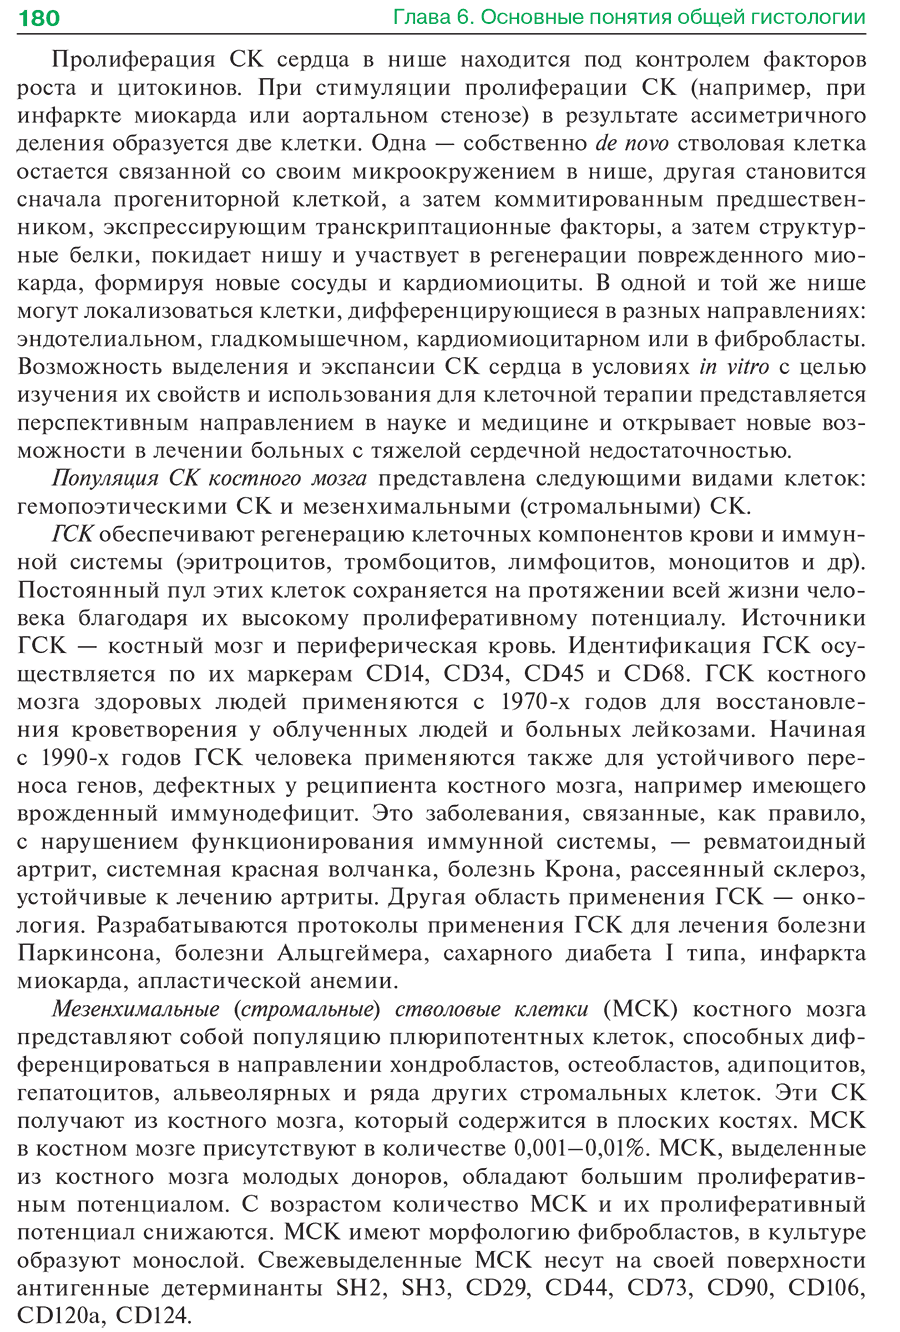 Пример страницы из книги "Гистология, эмбриология, цитология: учебник" - Афанасьев Ю. И.